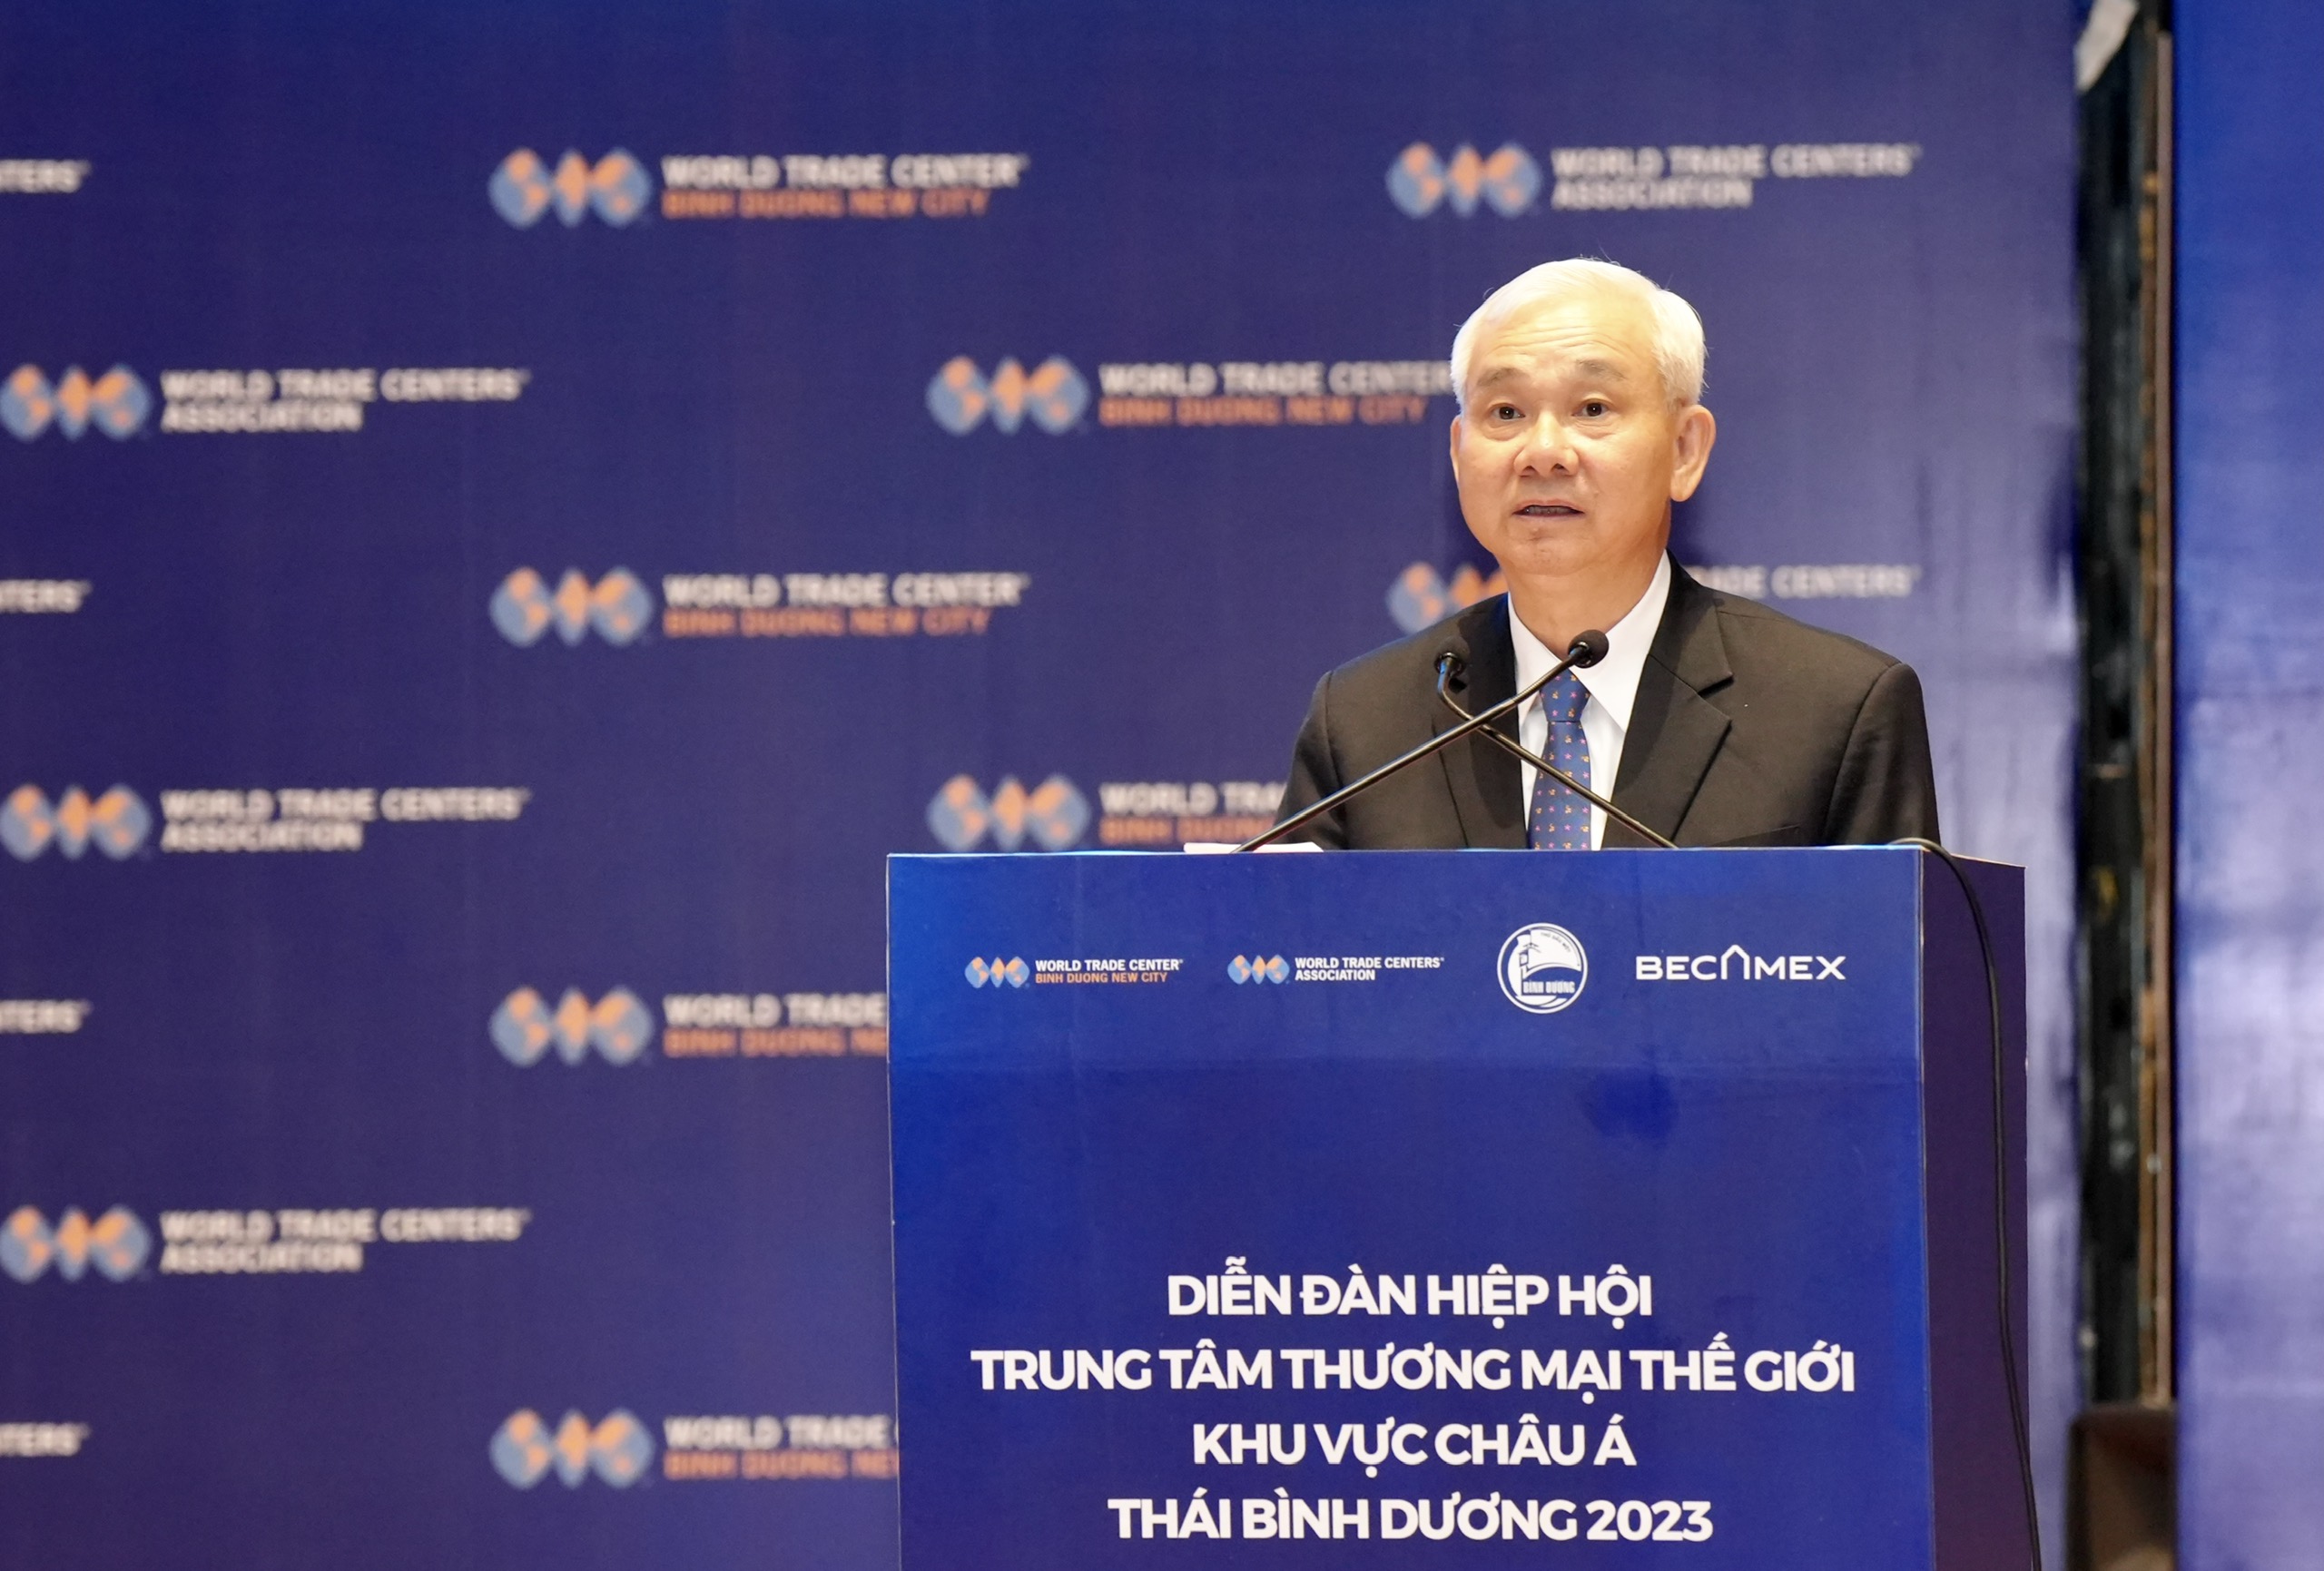 Đồng chí Phạm Ngọc Thuận, Tổng Giám đốc Tổng Công ty Becamex IDC phát biểu tại chương trình.